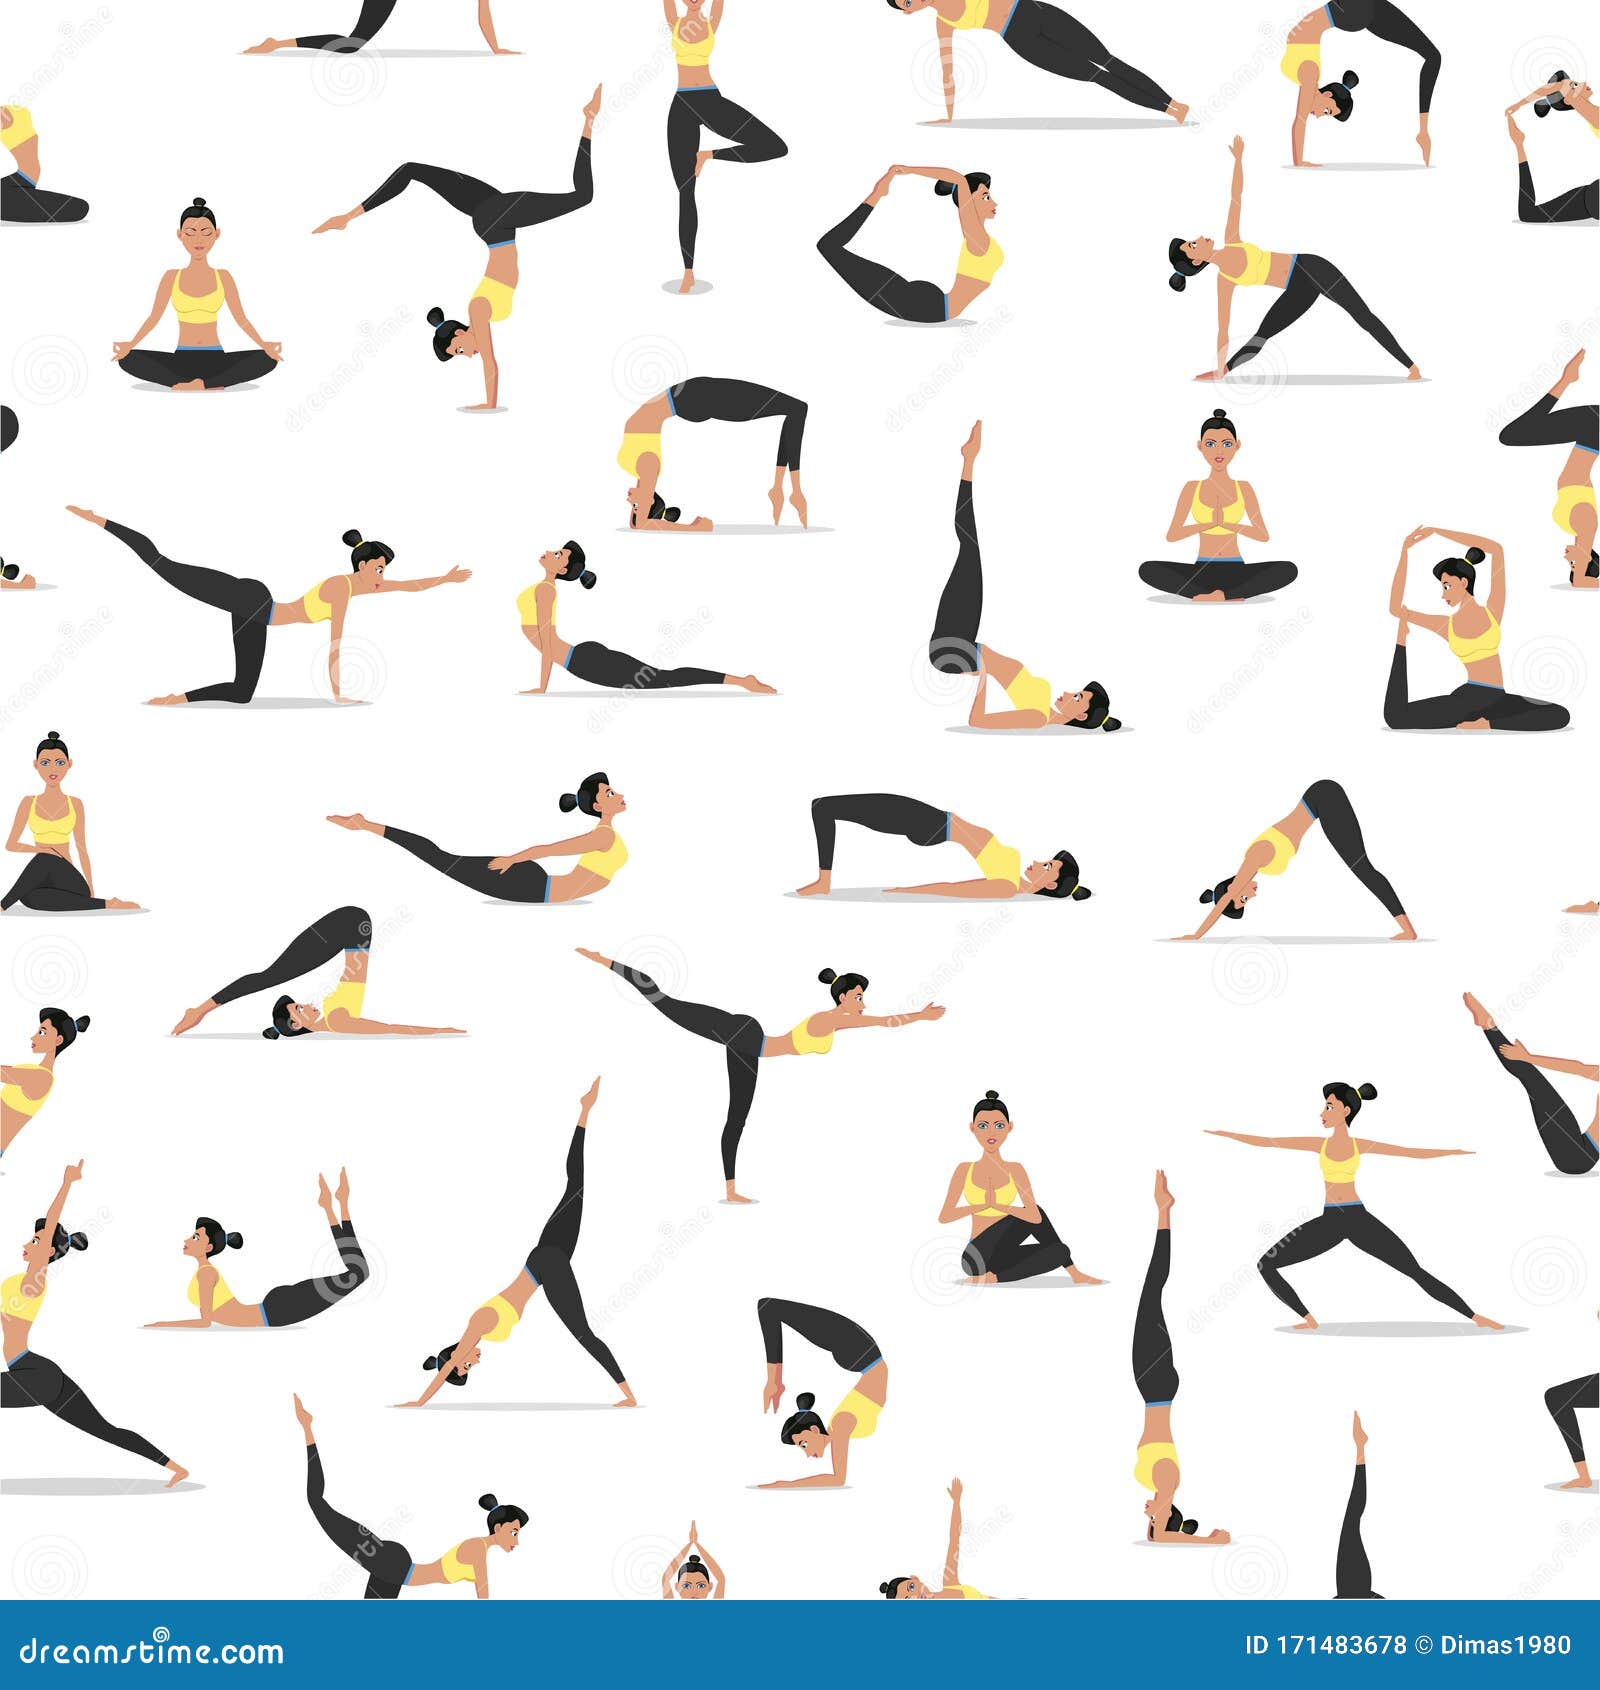 El Diseño De Yoga Es Transparente Stock de ilustración - Ilustración de ejercicio, 171483678